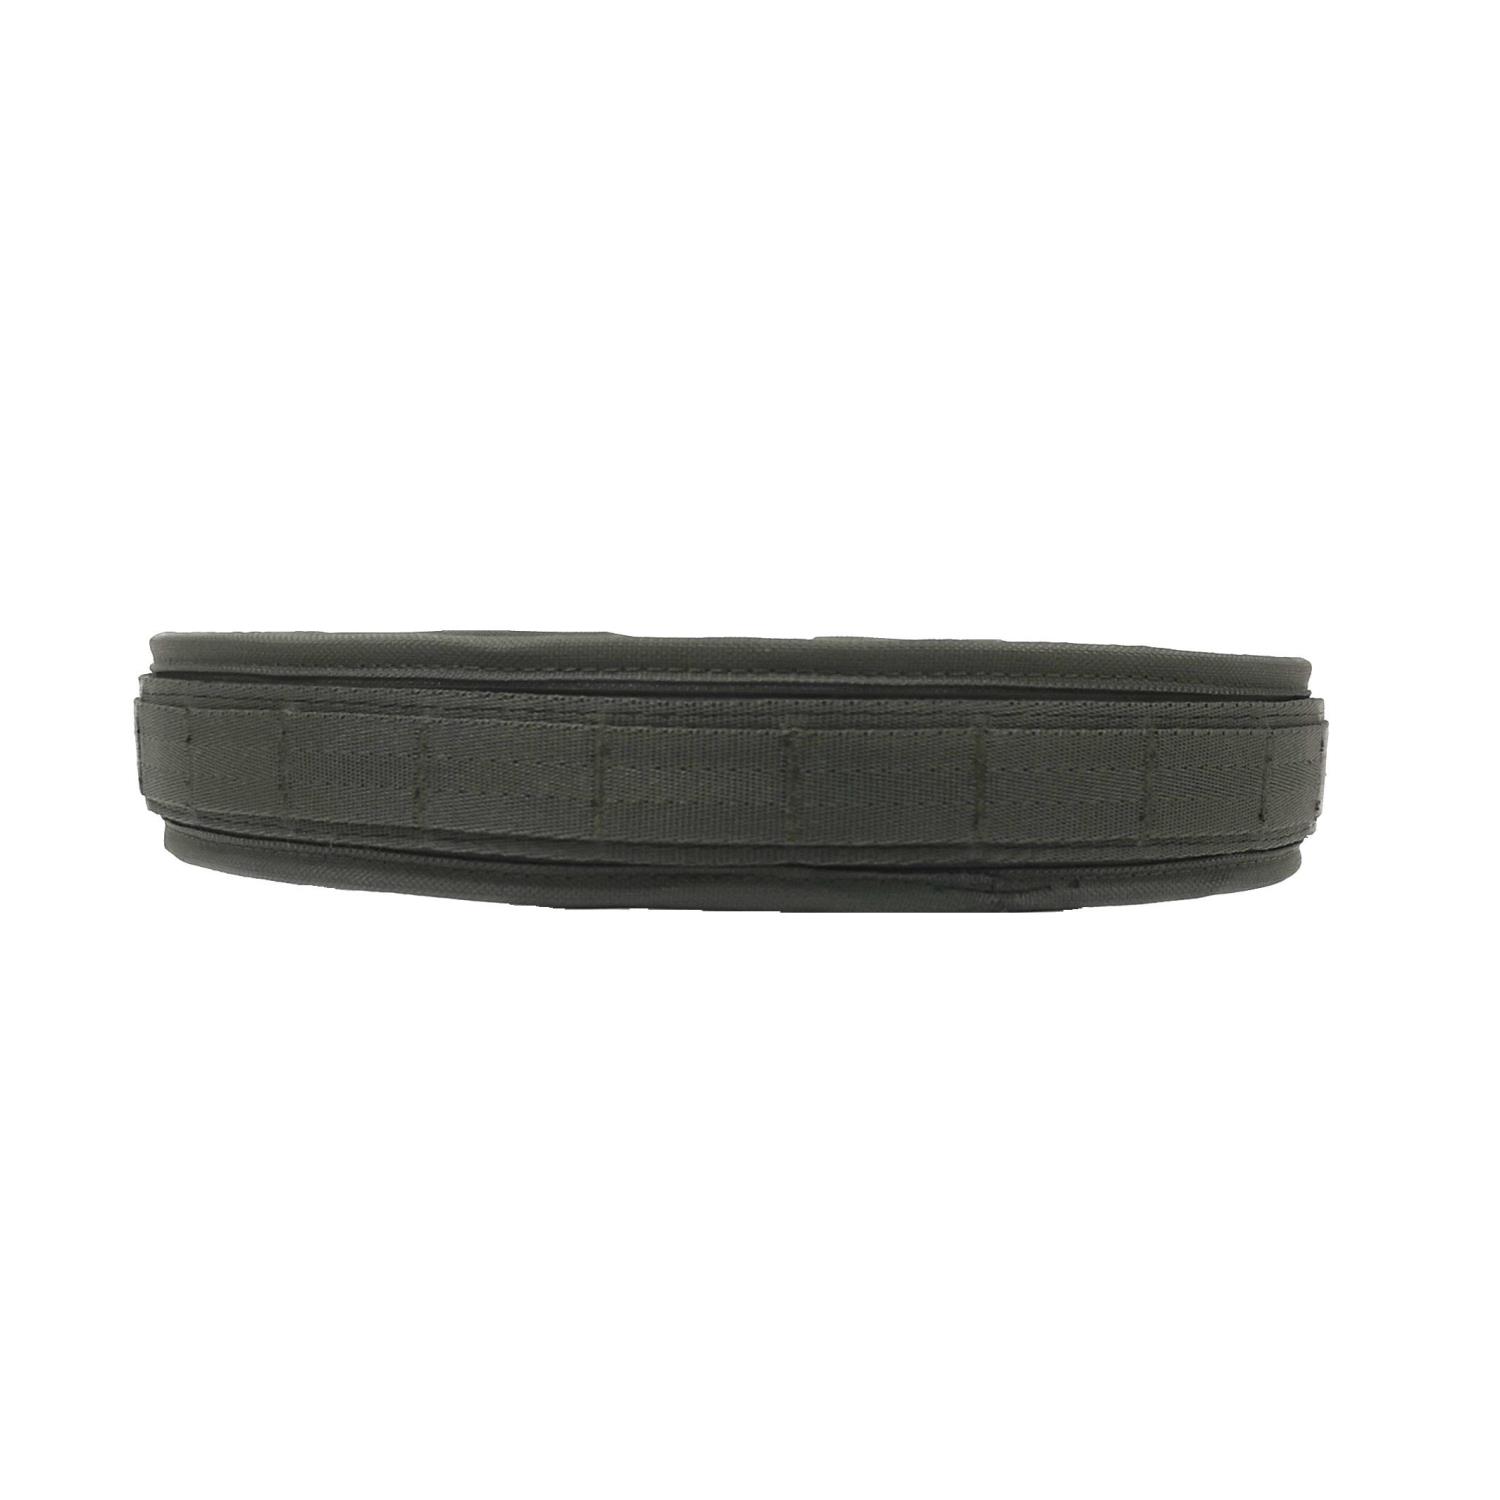 Gun belt 100-125cm